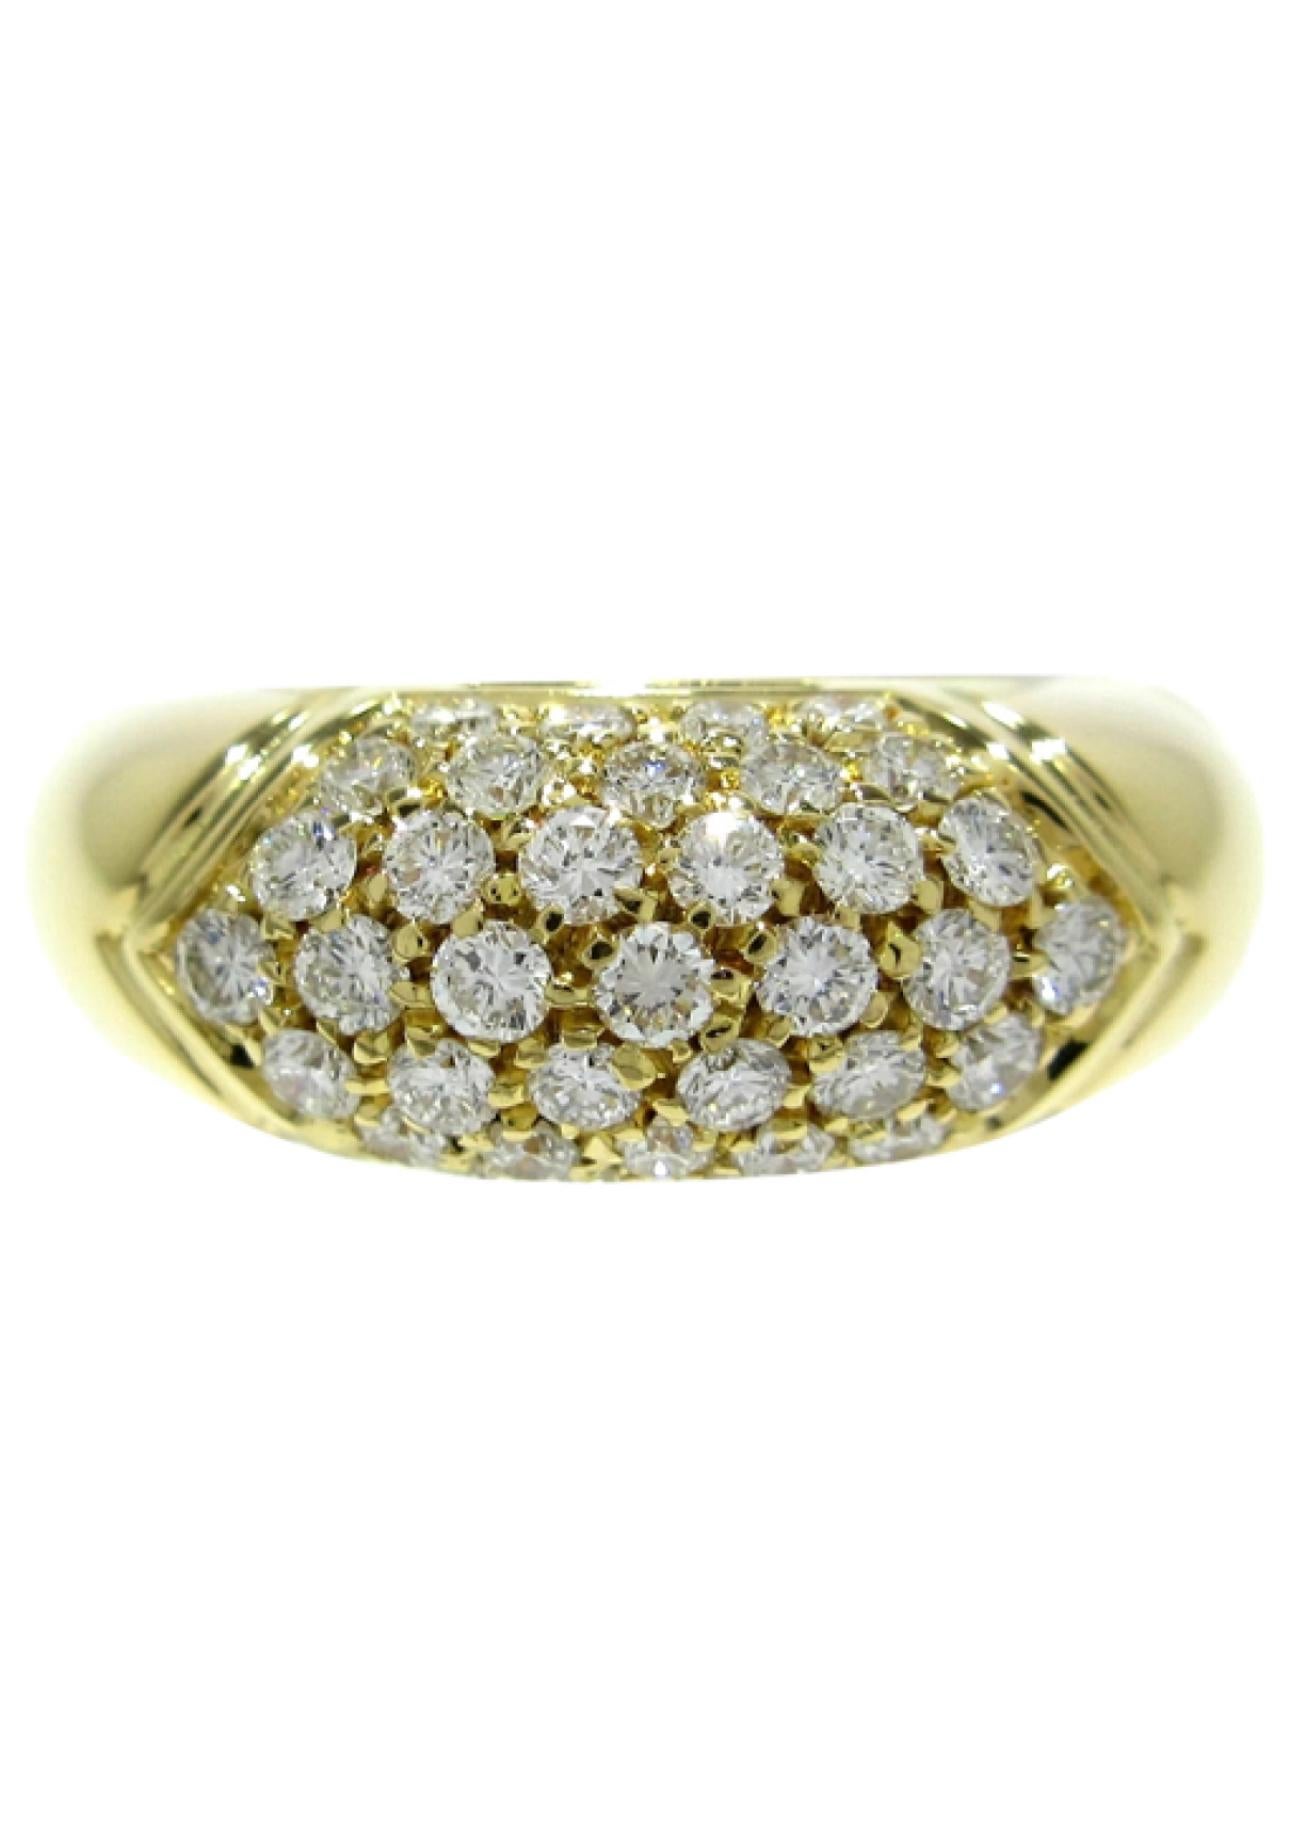 Vintage Glamour Tronchetto Ring entworfen von Bvlgari.

Ein geometrisches Ringband, das in Rom, Italien, vom Haus Bulgari aus massivem Gelbgold gefertigt wurde.  18 Karat Gold, mit 1 Karat farblos funkelnden Diamanten im Brillantschliff. Datiert